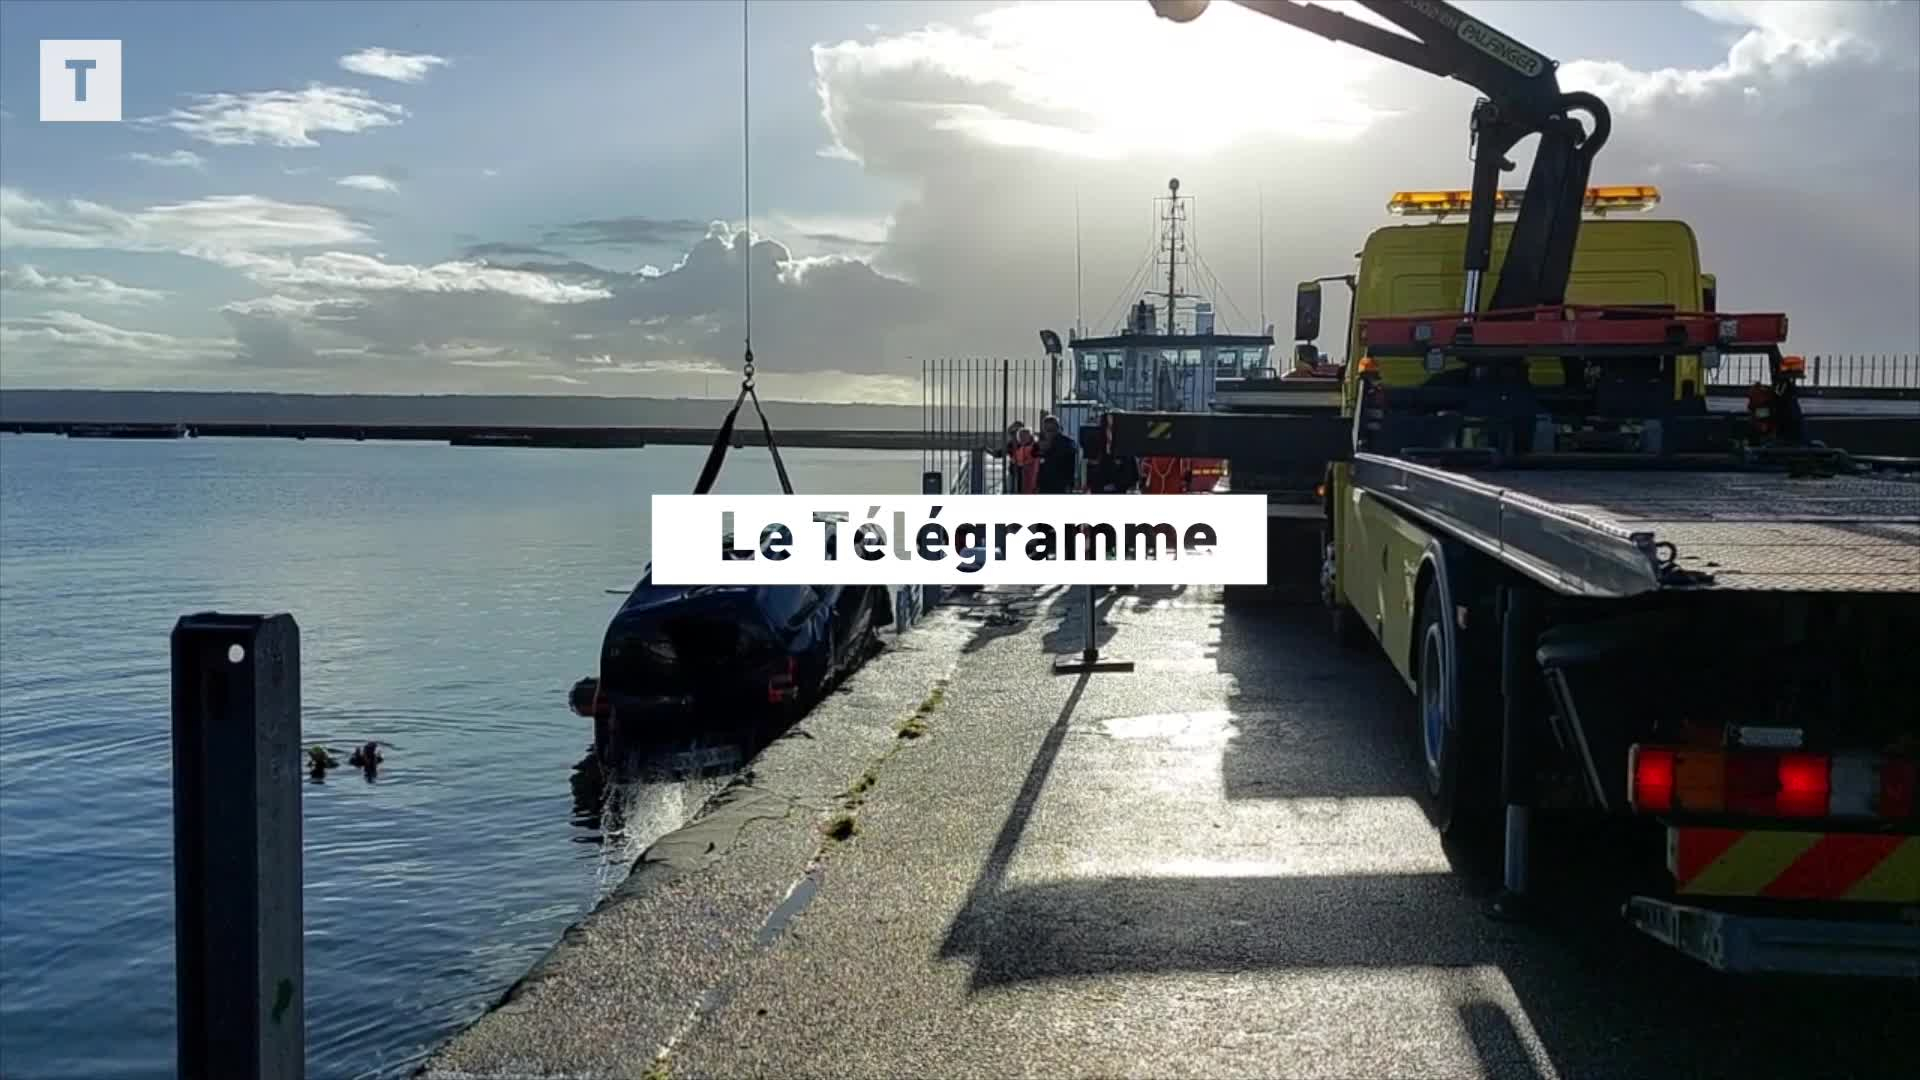 À Brest, un homme divagant sur le port, sa voiture à l'eau [Vidéo]